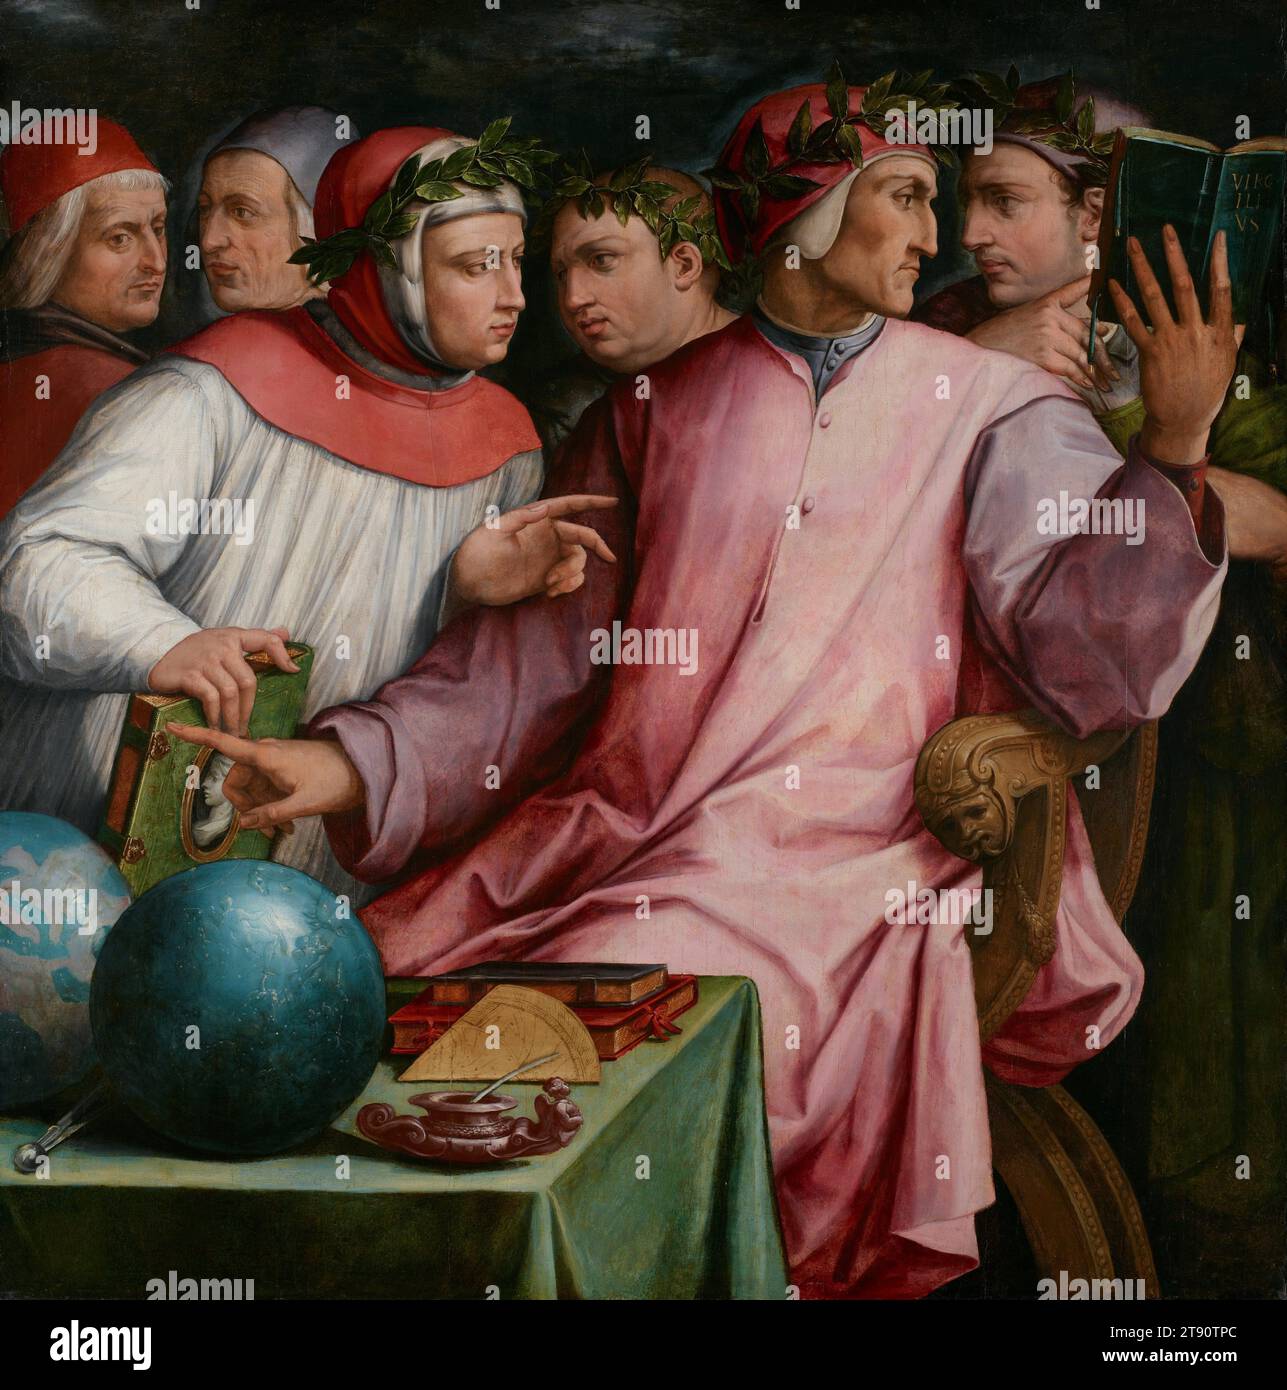 Sei poeti toscani, 1543–44, Giorgio Vasari, italiano (Firenze), italiano (Firenze), 1511–1574, 52 x 51 5/8 poll. (132,08 x 131,13 cm) (tela)62 1/8 x 61 5/8 x 3/4 pollici (157,8 x 156,53 x 12,07 cm) (cornice esterna), olio su tavola, Italia, XVI secolo, questo ritratto di gruppo di sei illustri poeti e scrittori toscani celebra l'età d'oro della letteratura italiana del XIV e XV secolo e il ruolo di questi individui nell'elevare la letteratura e nobilitare la lingua Foto Stock